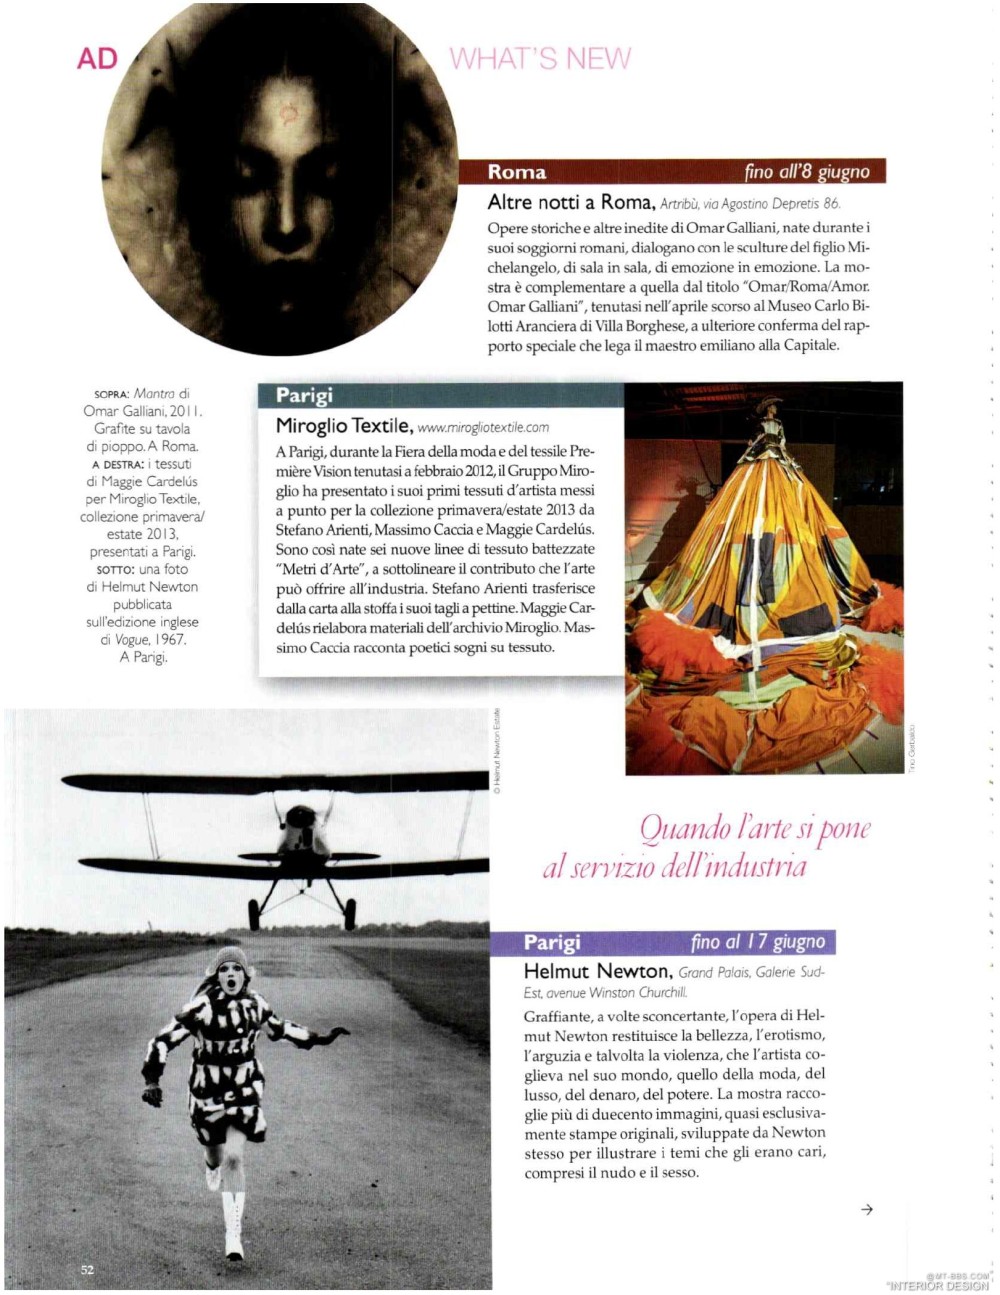 意大利AD 杂志 2012年全年JPG高清版本 全免（上传完毕）_0054.jpg